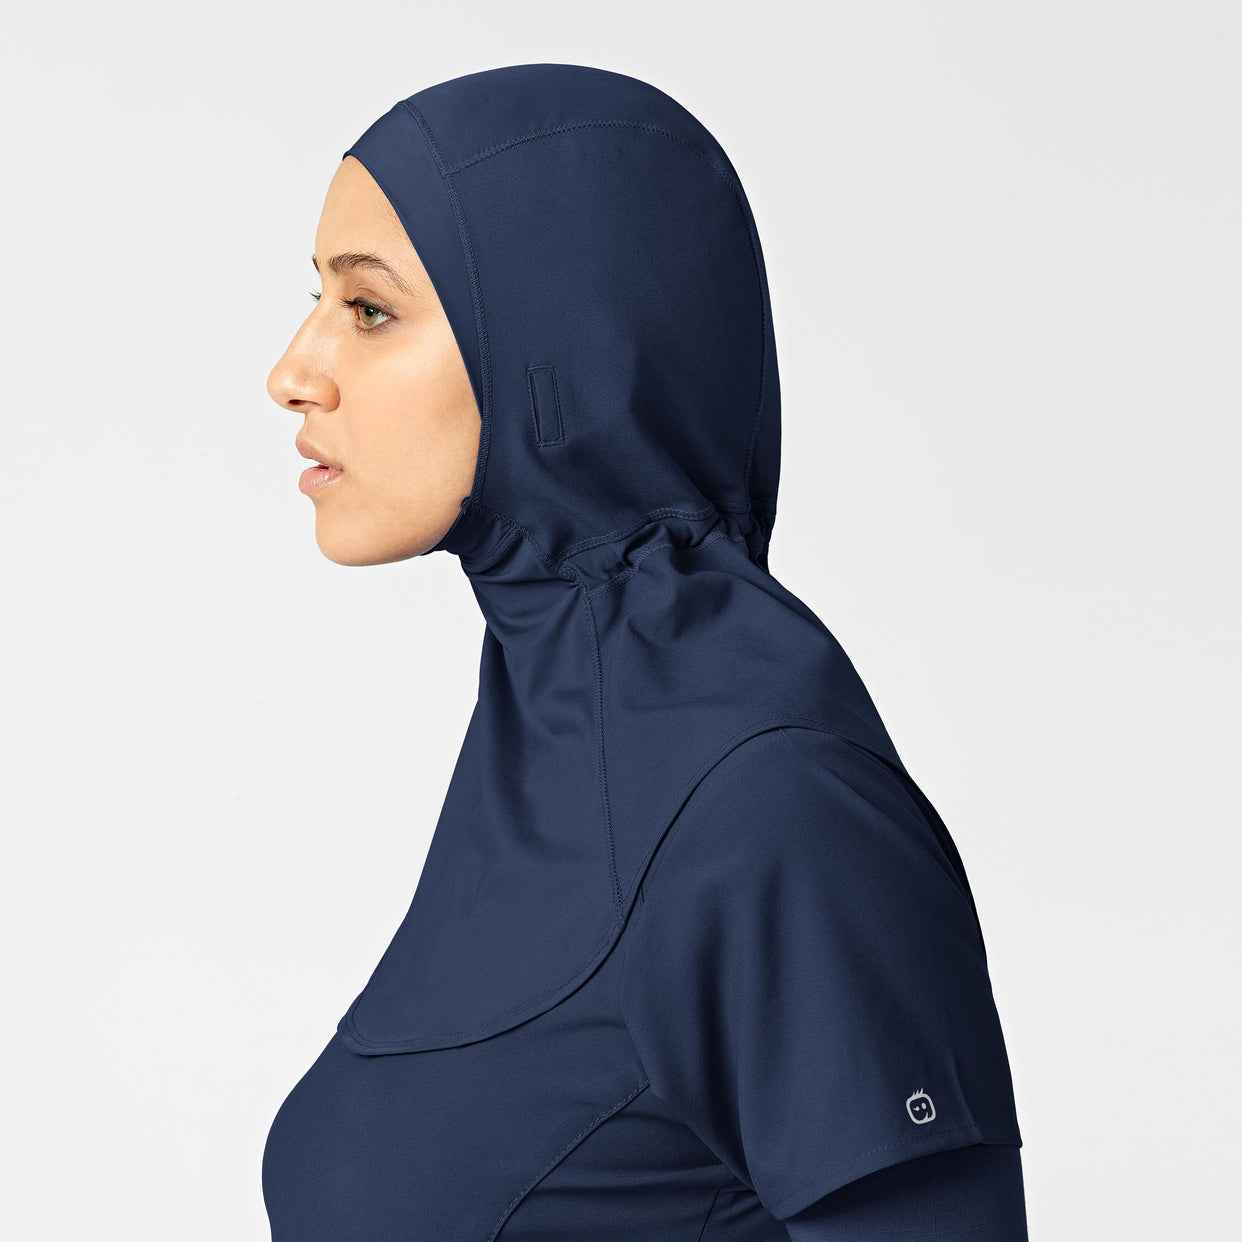 W123 Women's Hijab - Navy